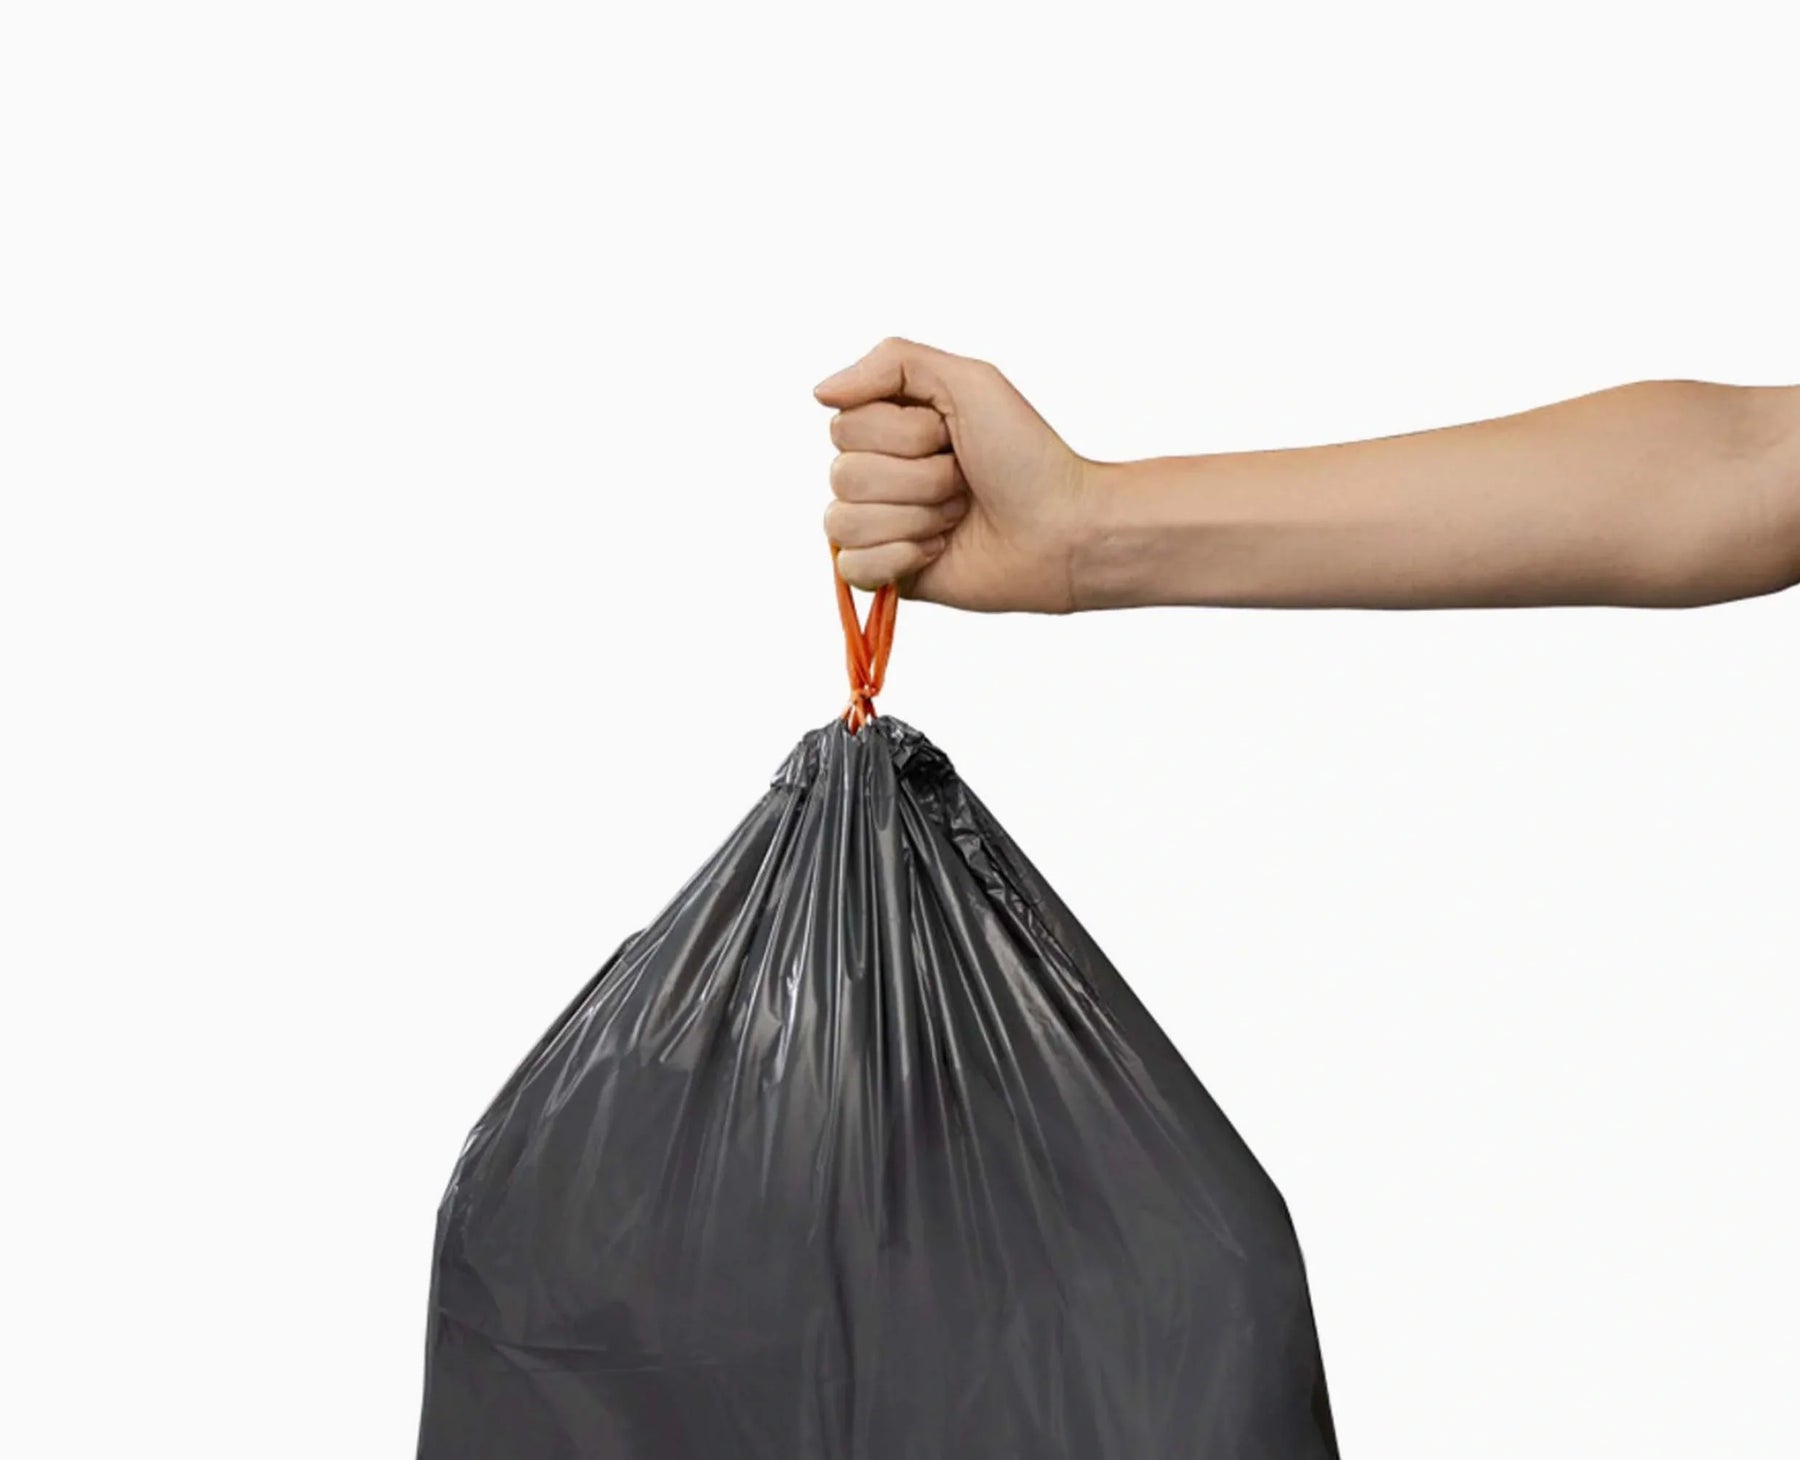 Joseph Joseph Sac poubelle 50 L pour compacteur à déchets Titan pas cher 